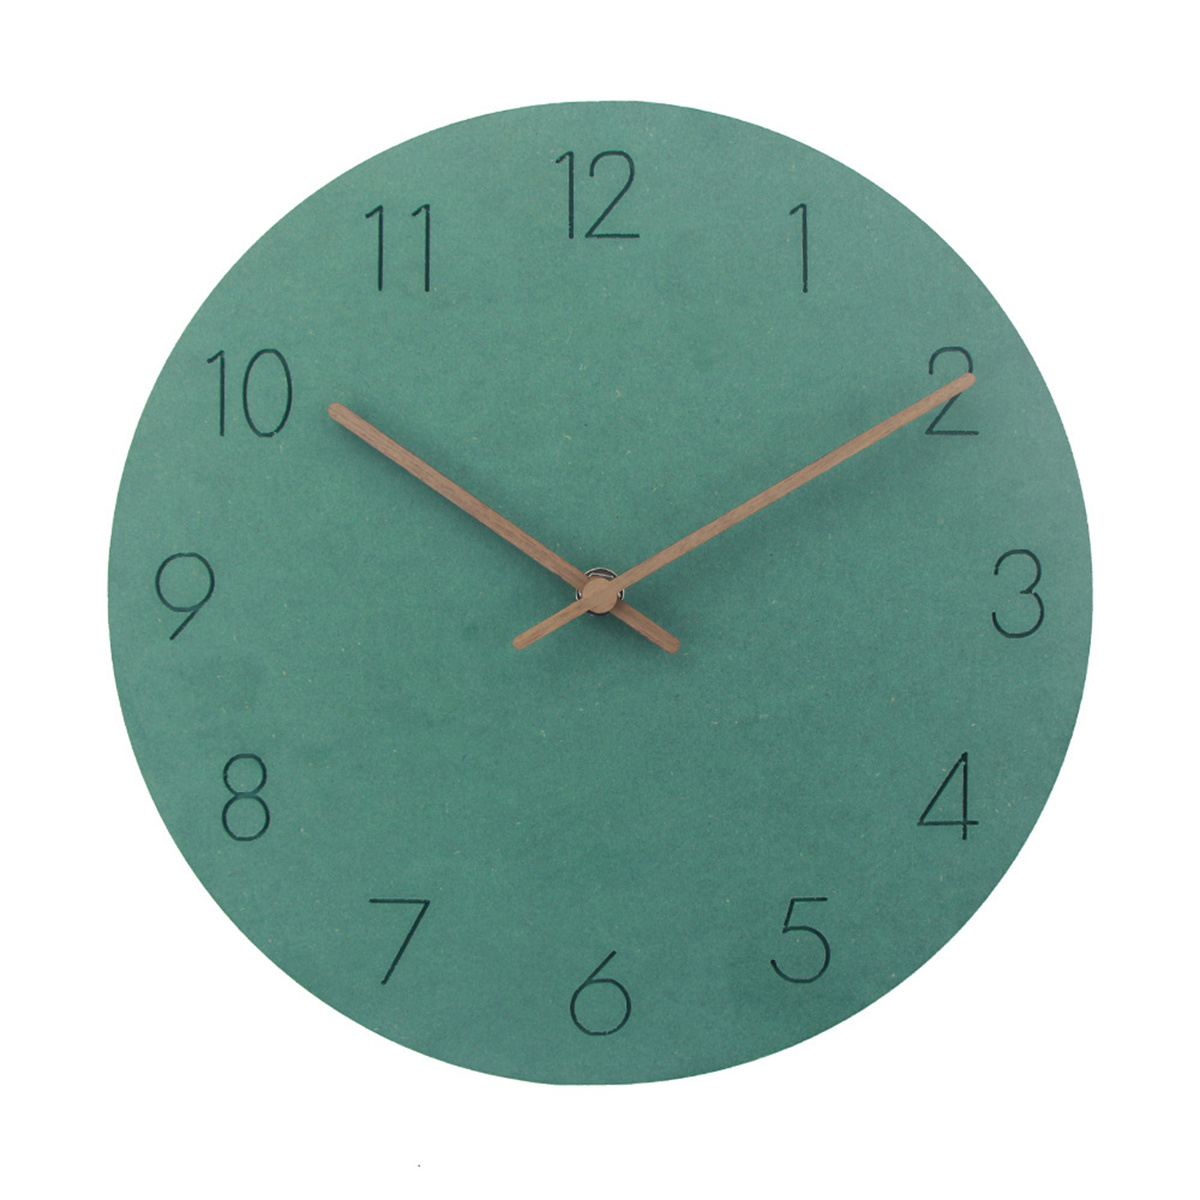 Wanduhr Holz aus hängen stumm Wohnzimmer Wanduhr grün SYNTEK Uhren Uhr kreativ minimalistische